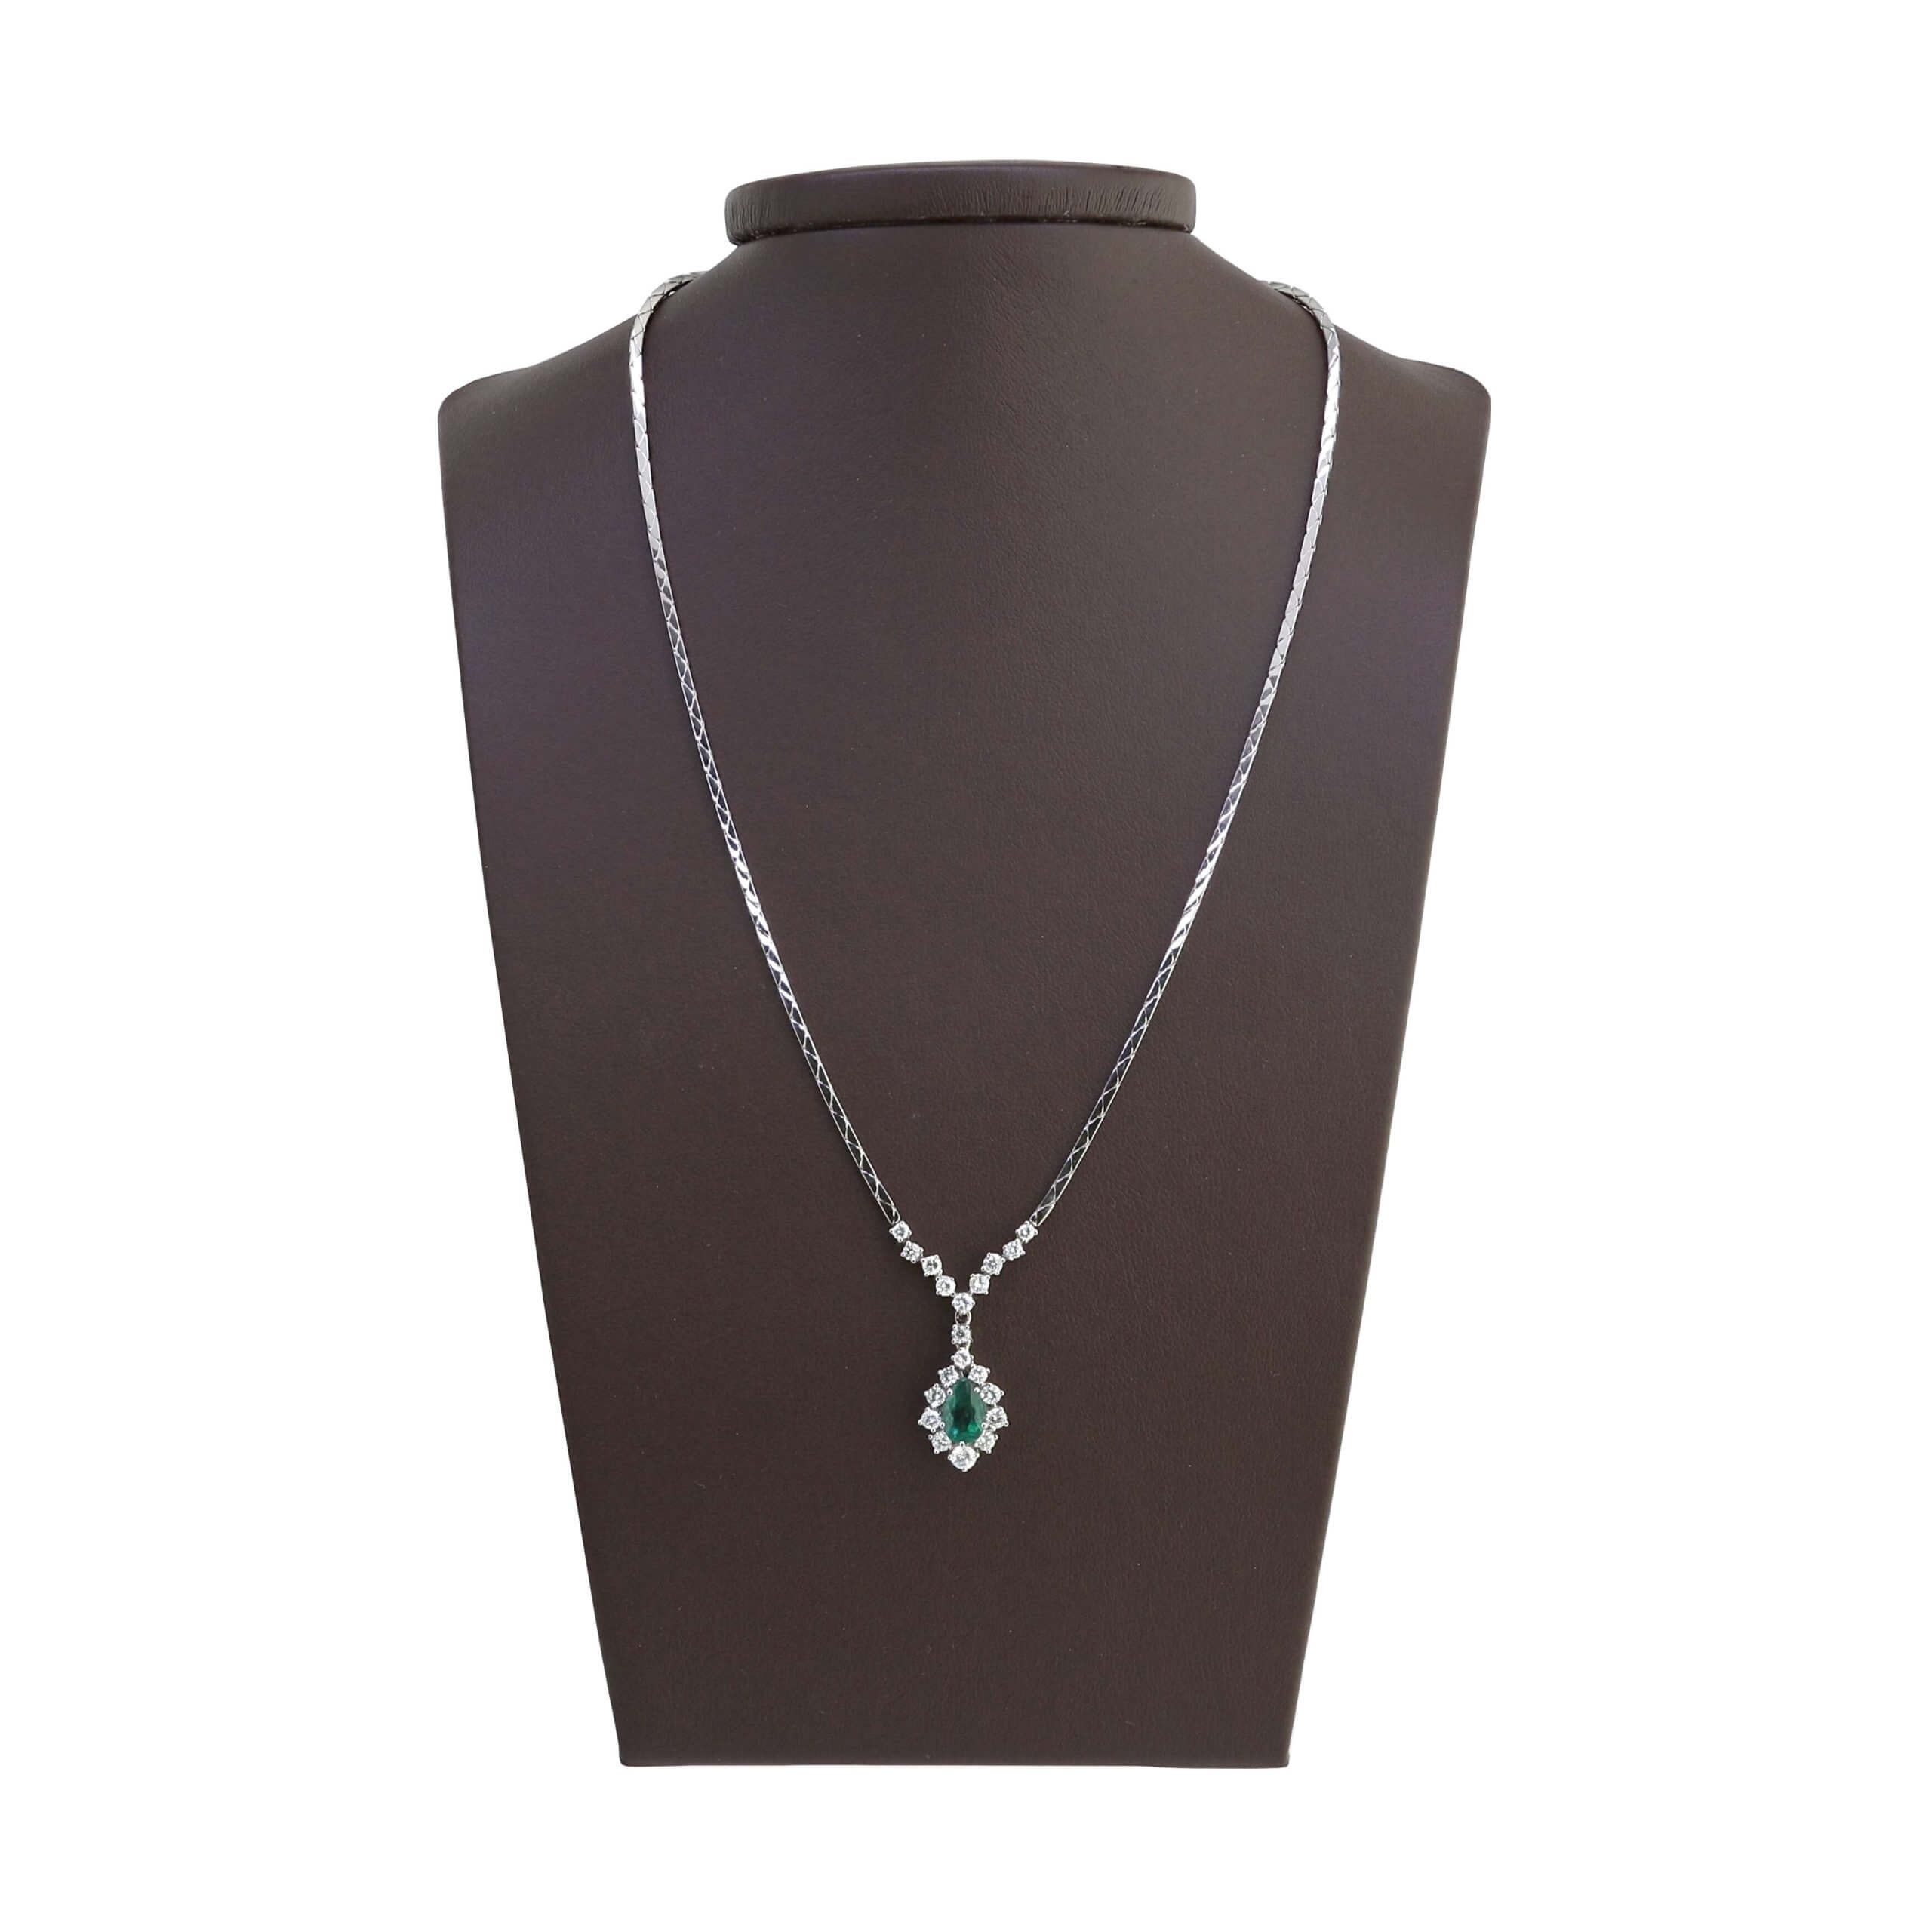 Emerald Diamond Necklace, signed by Bucherer